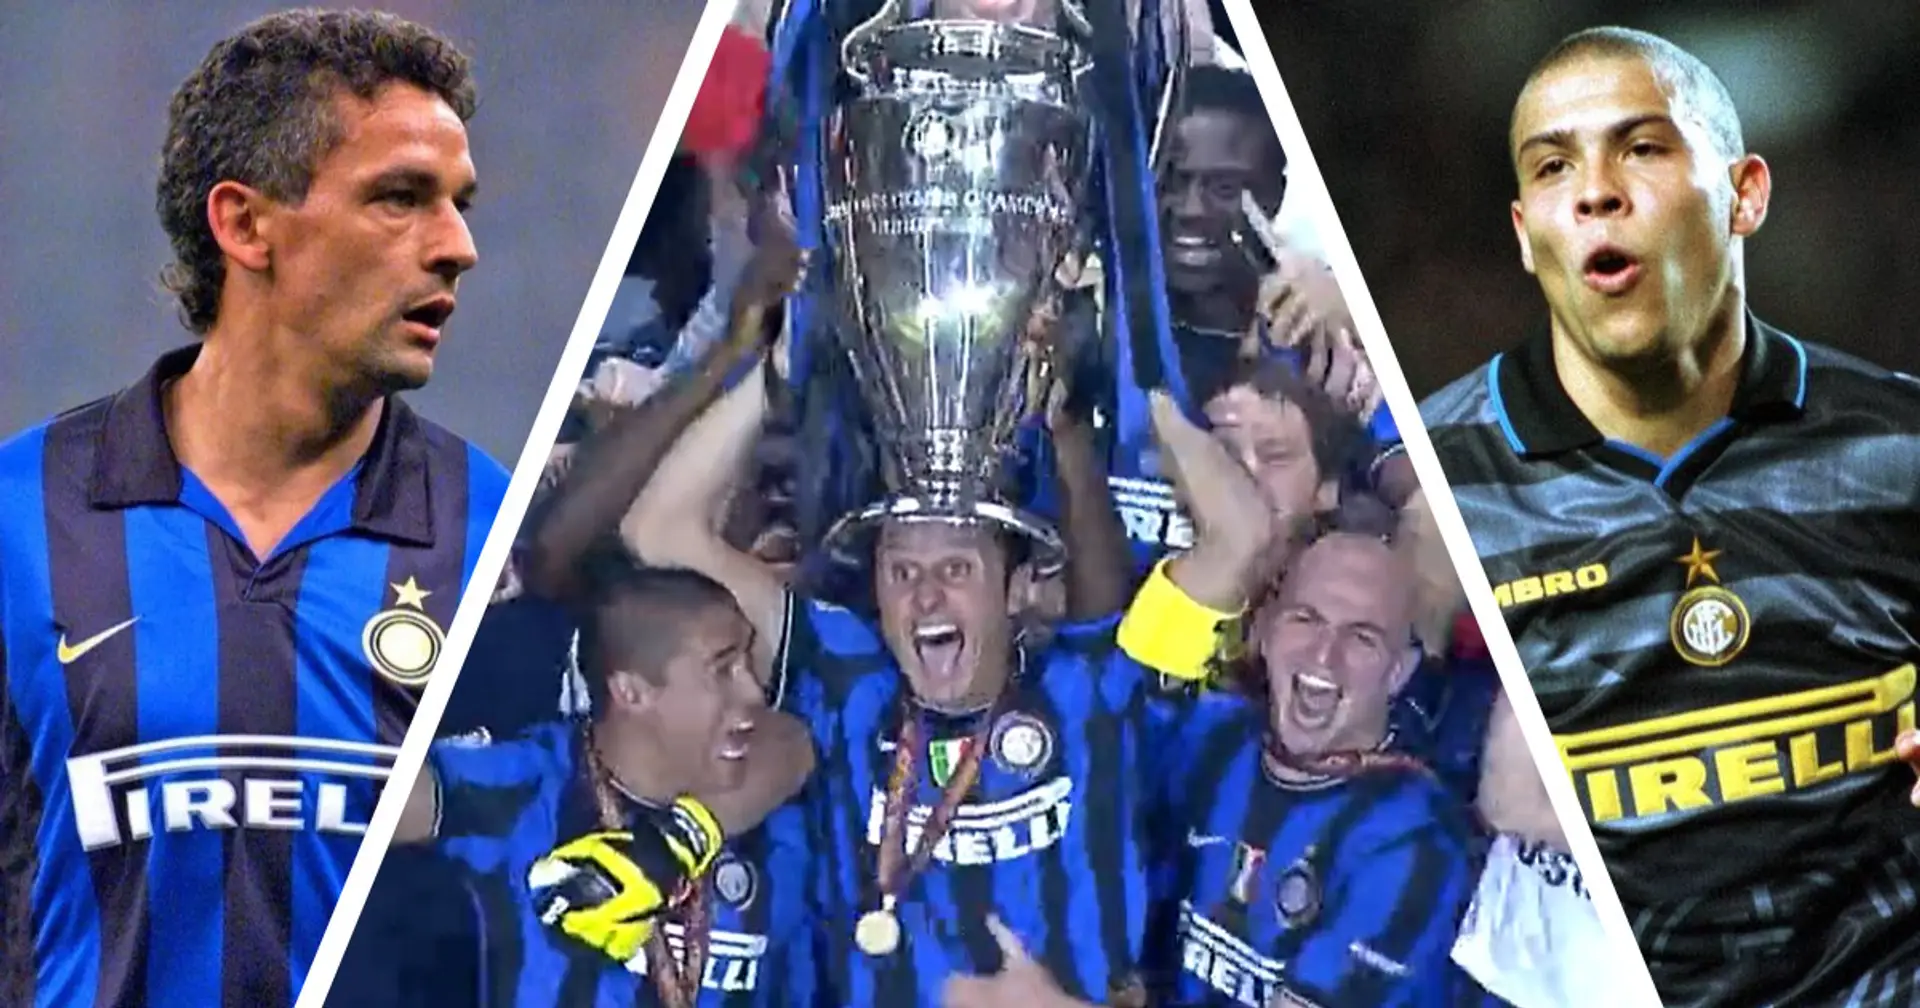 Vittorie, grandi campioni e non solo: l'Inter festeggia i suoi 115 anni di storia goloriosa (video integrale)